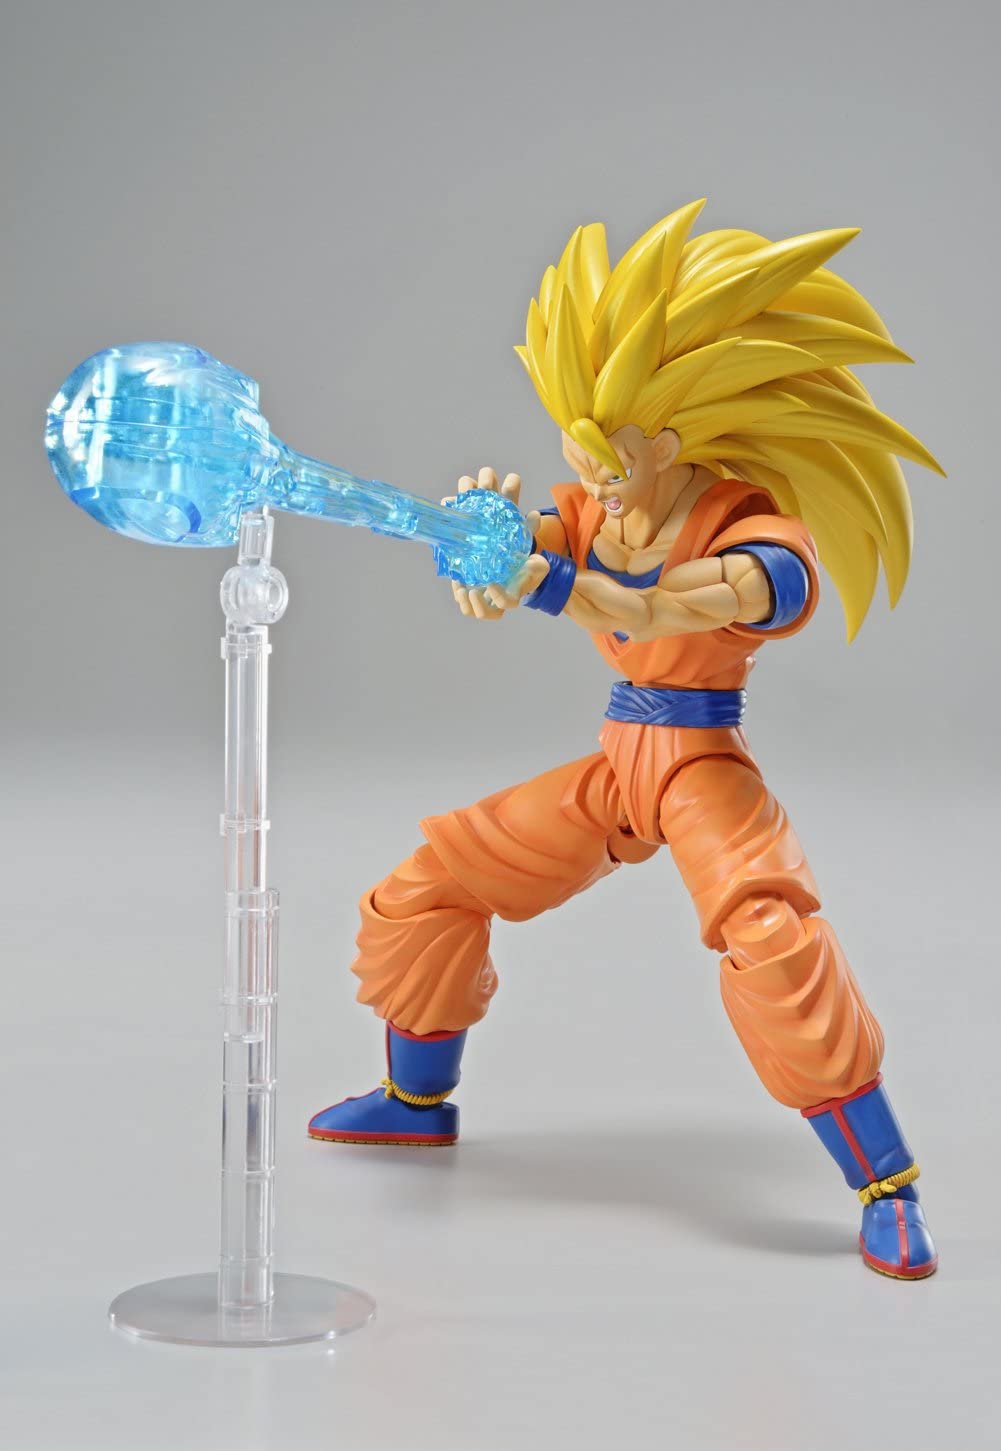 Goku Super Sayajin 3 Super forte imagem muito legal